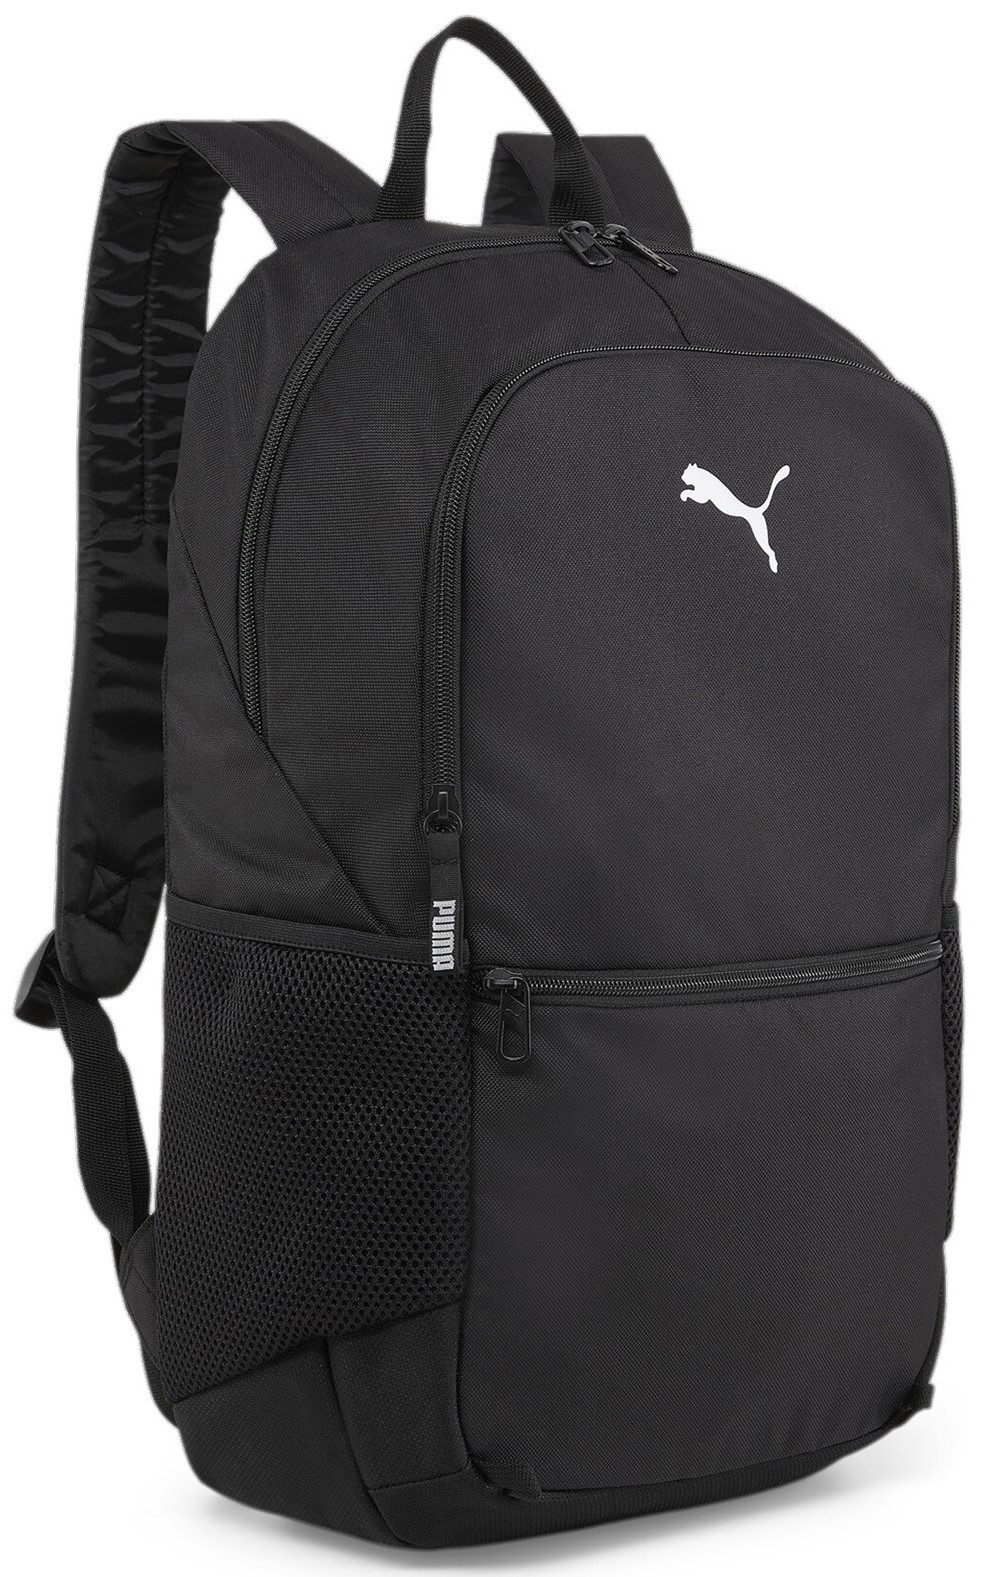 Mochila Puma teamGOAL Backpack with ball net